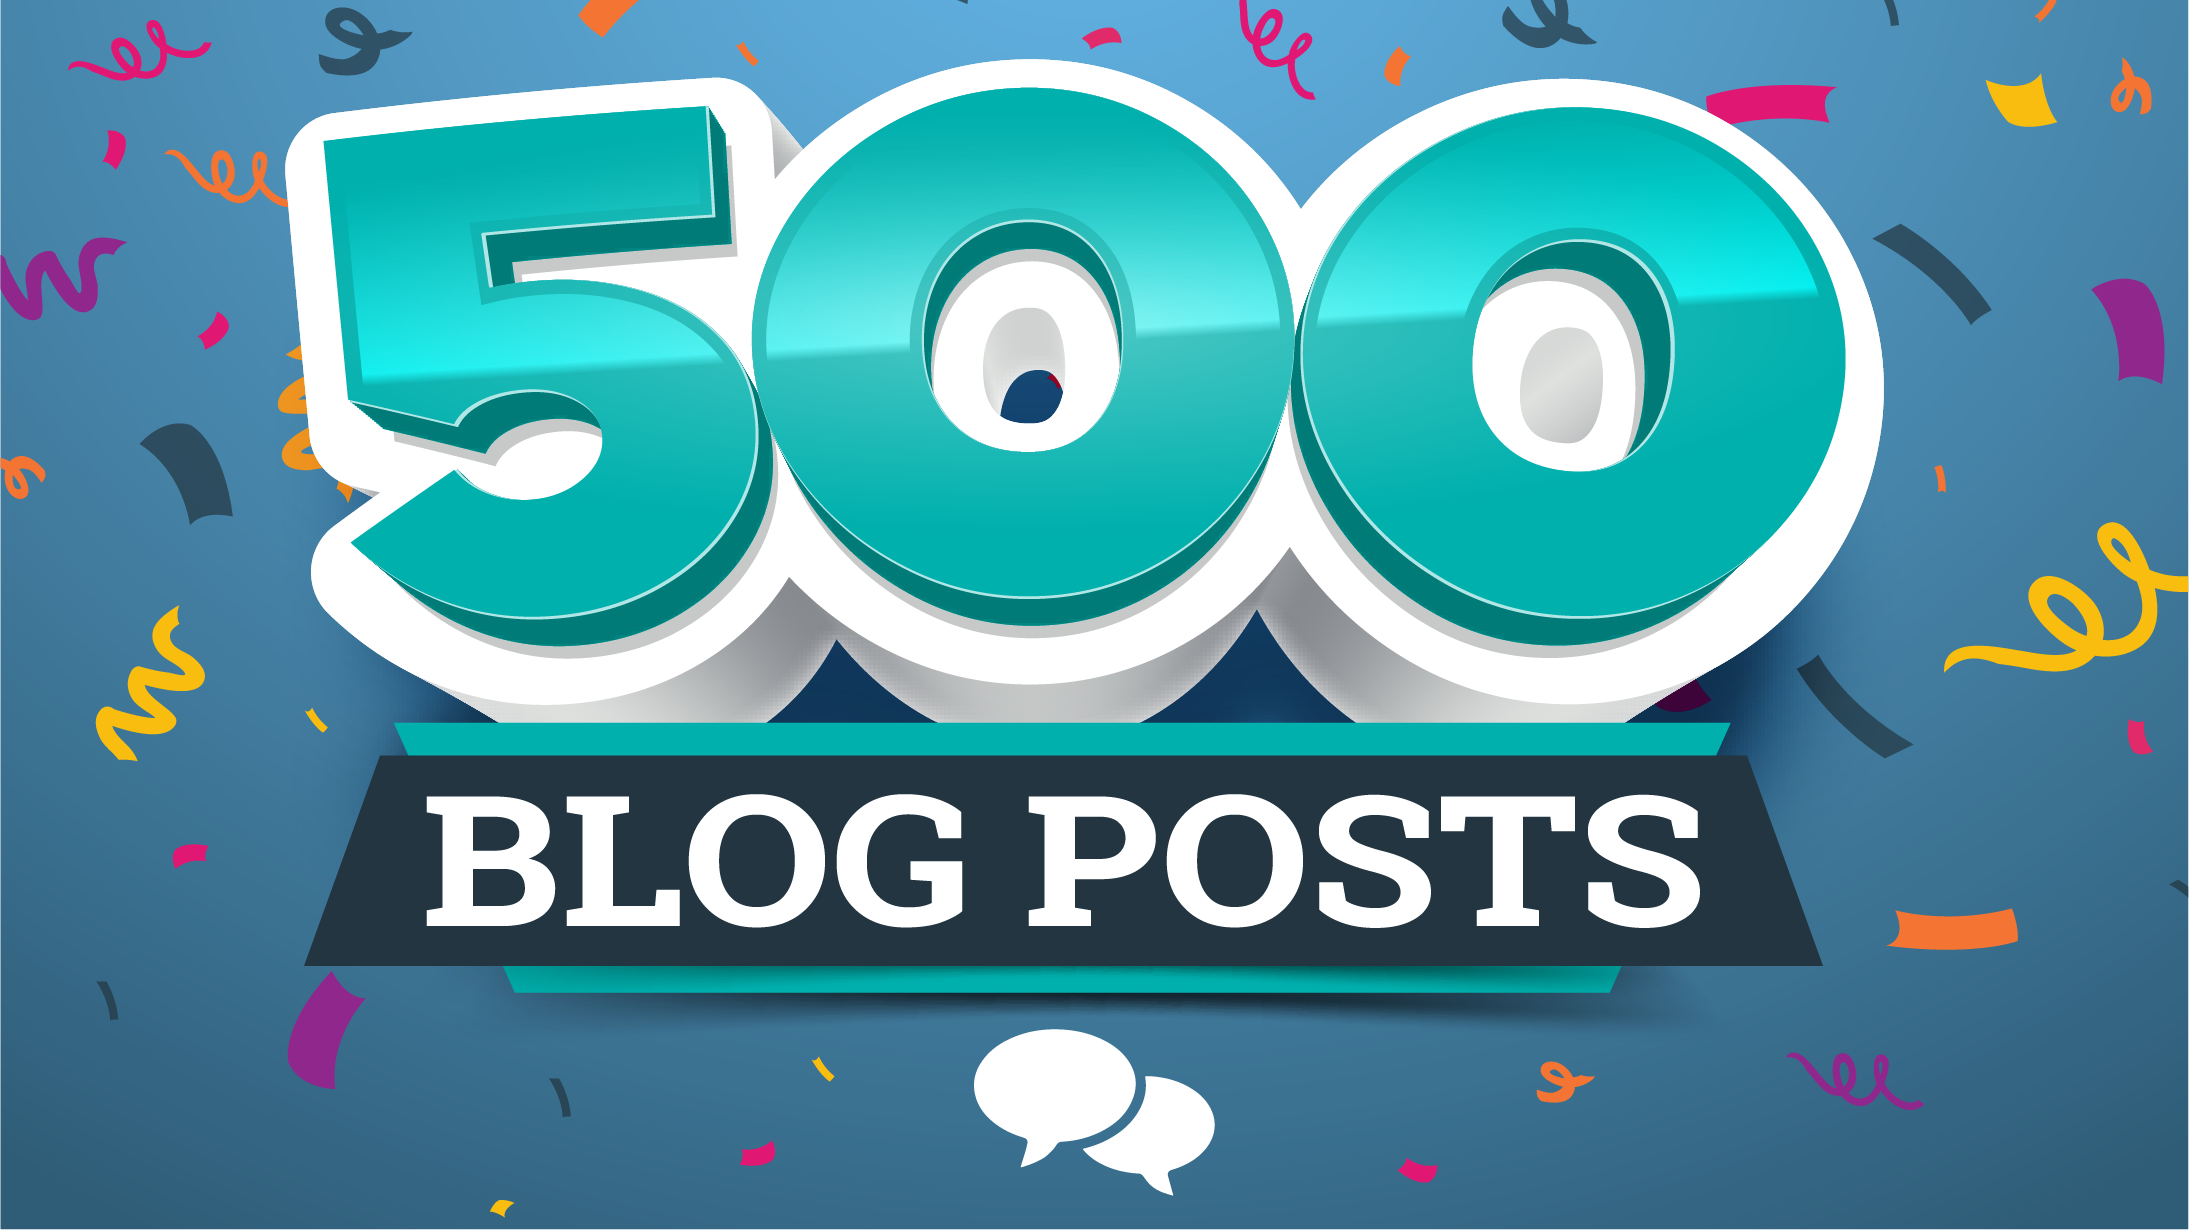 500 blog posts